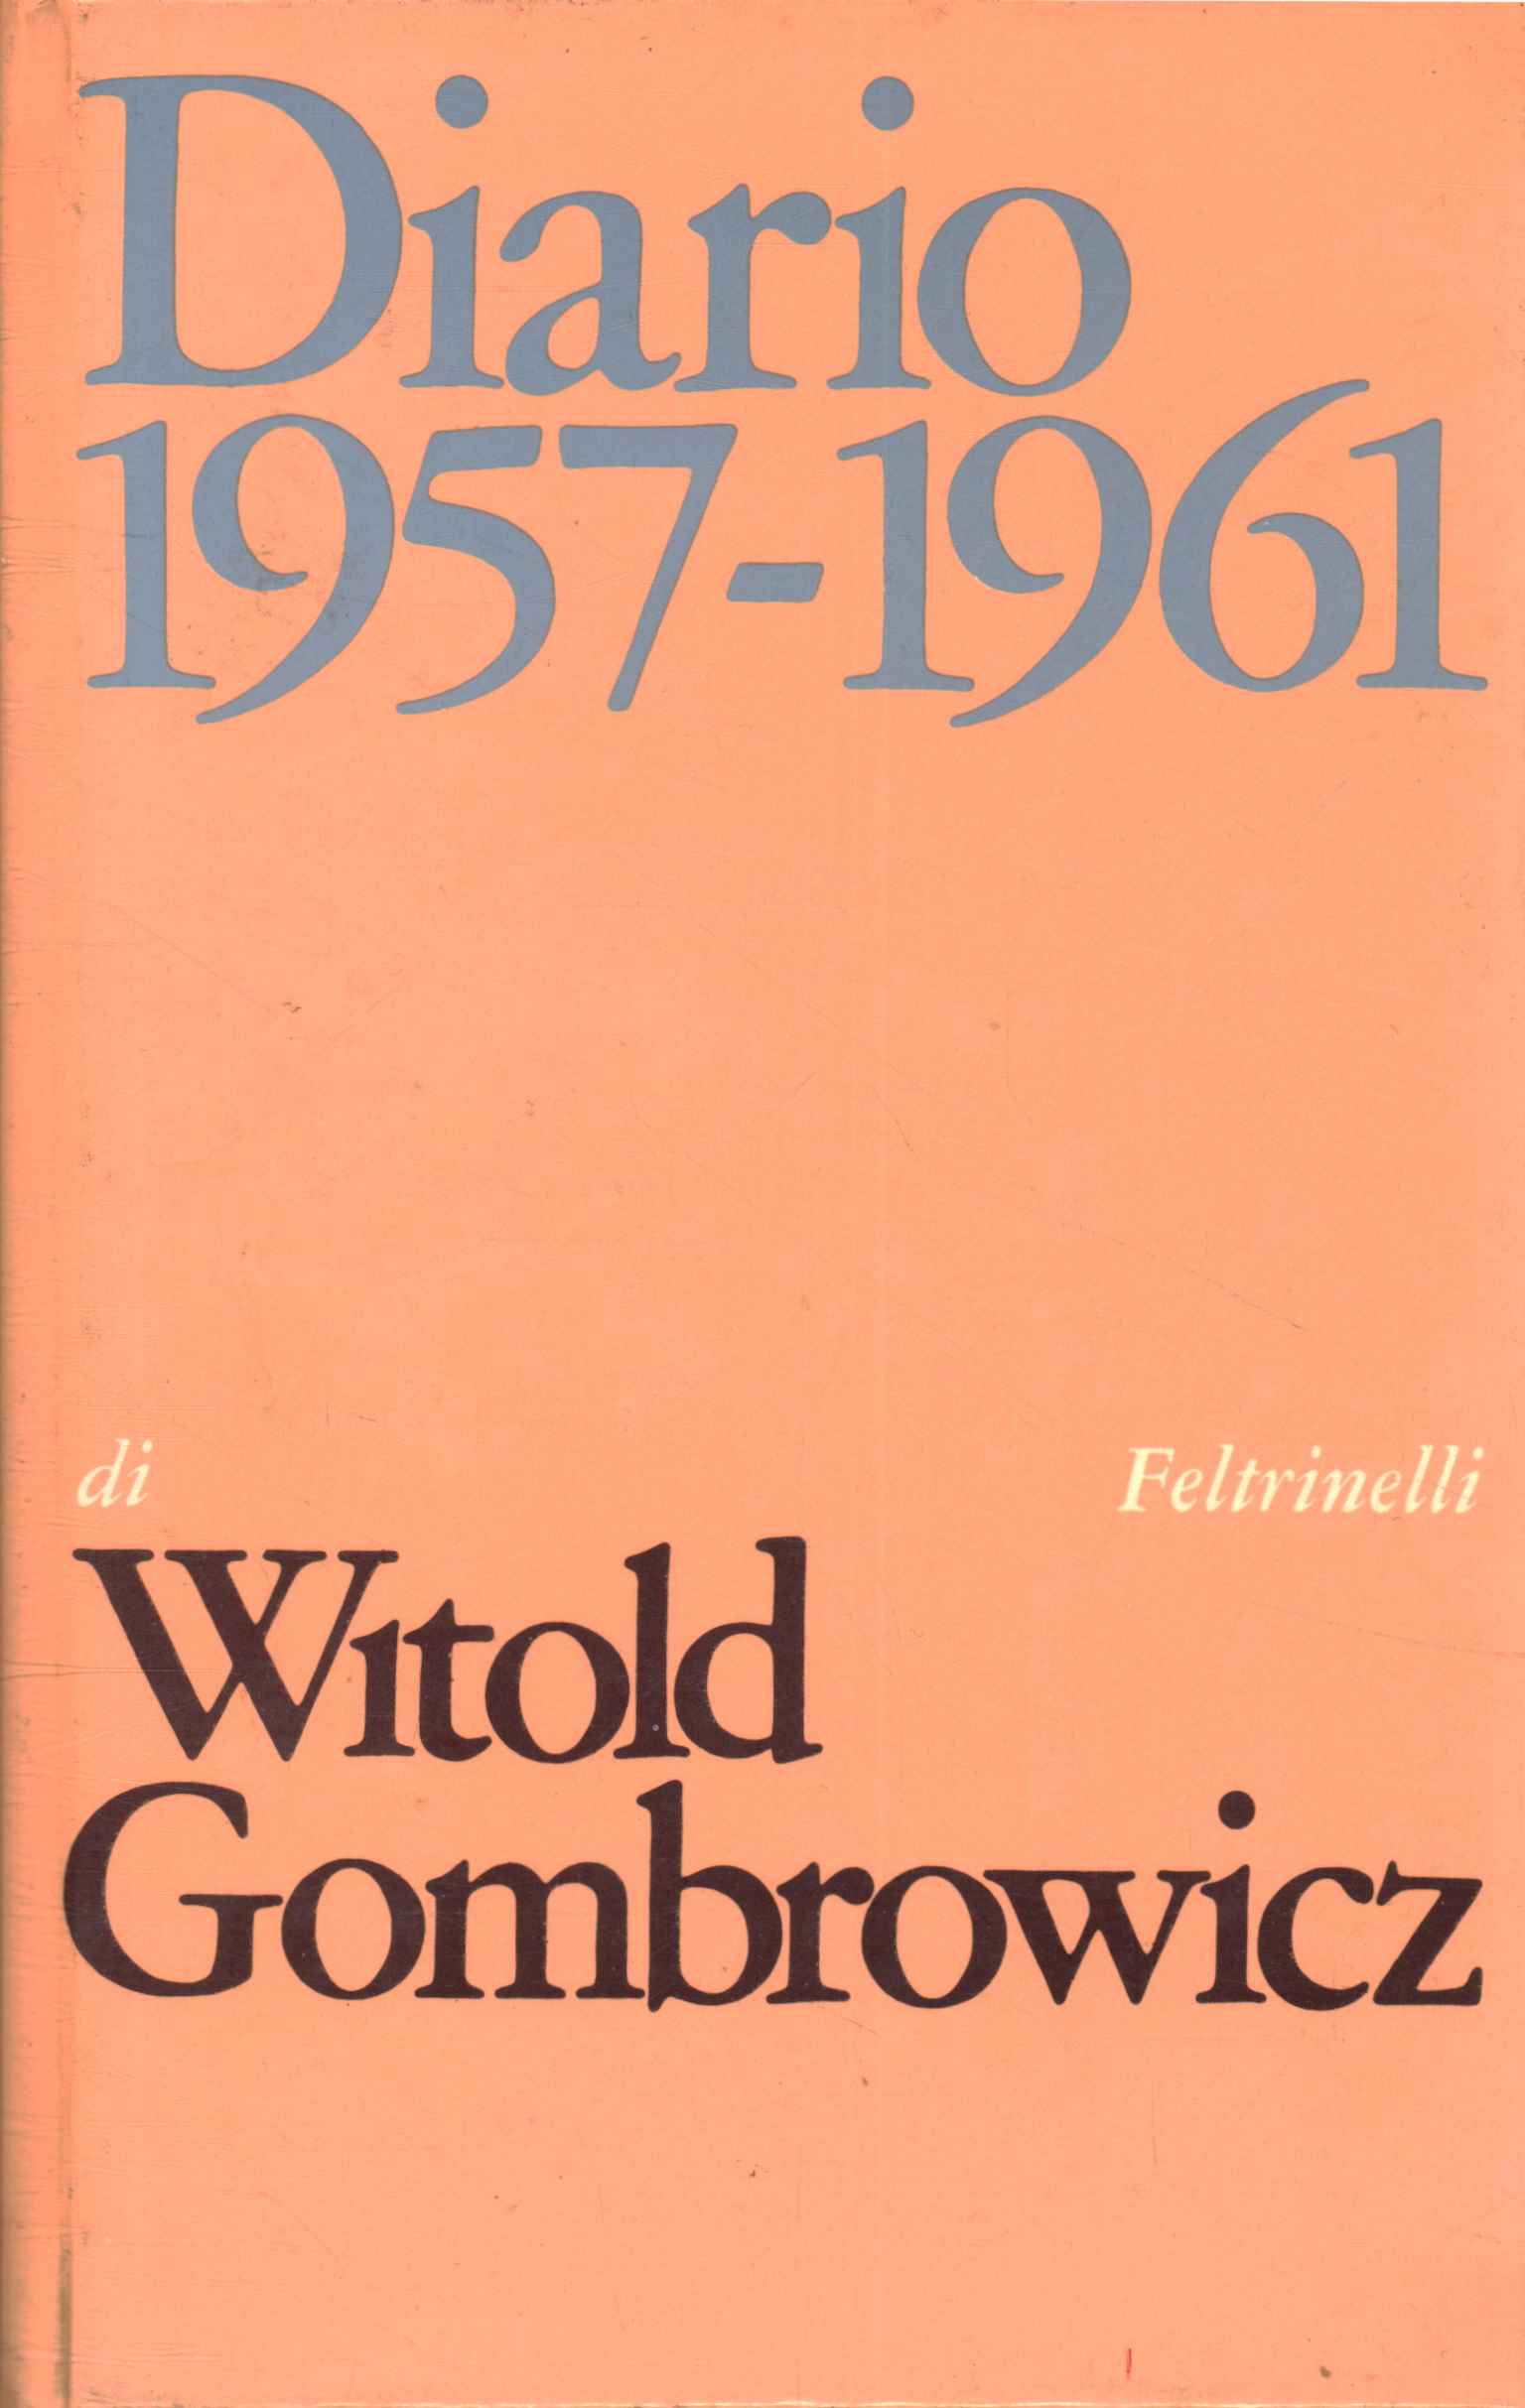 Journal 1957-1961